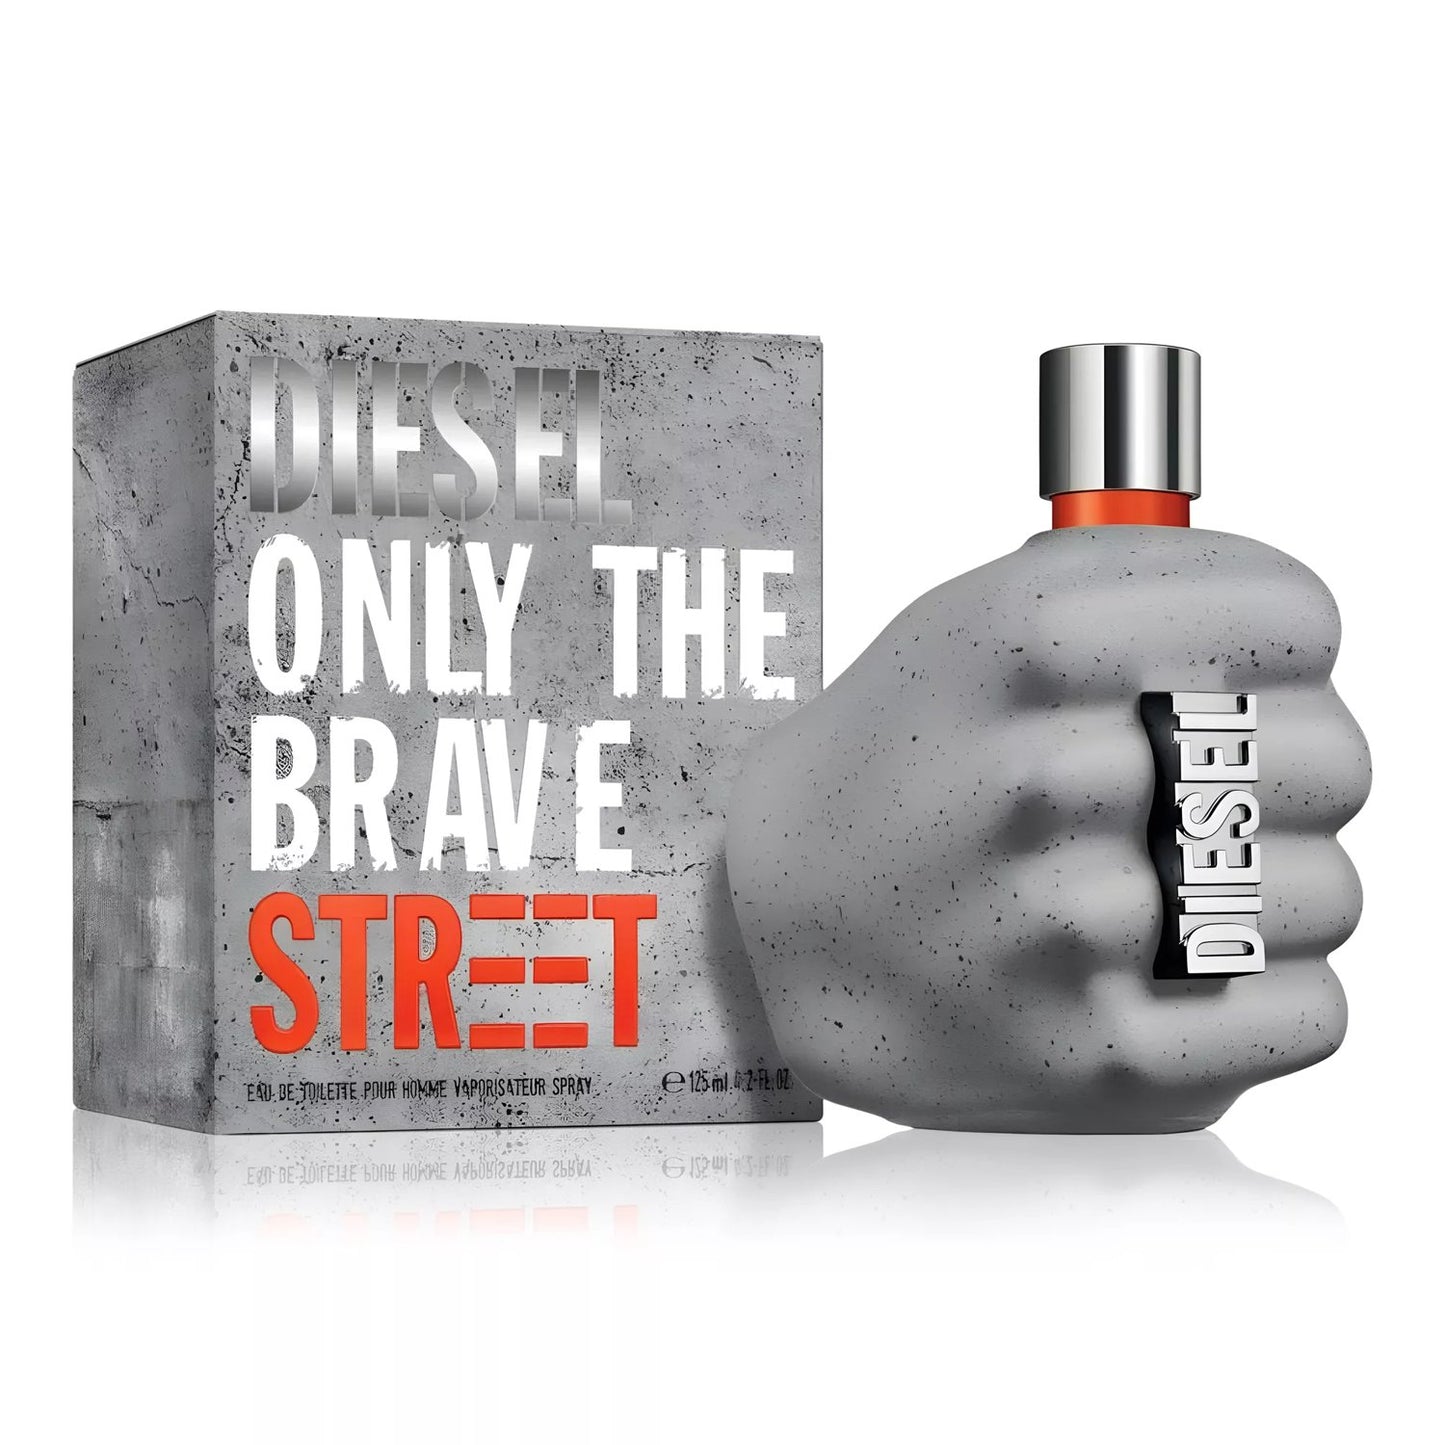 Only The Brave Street Eau de Toilette Spray (1.7 fl oz)